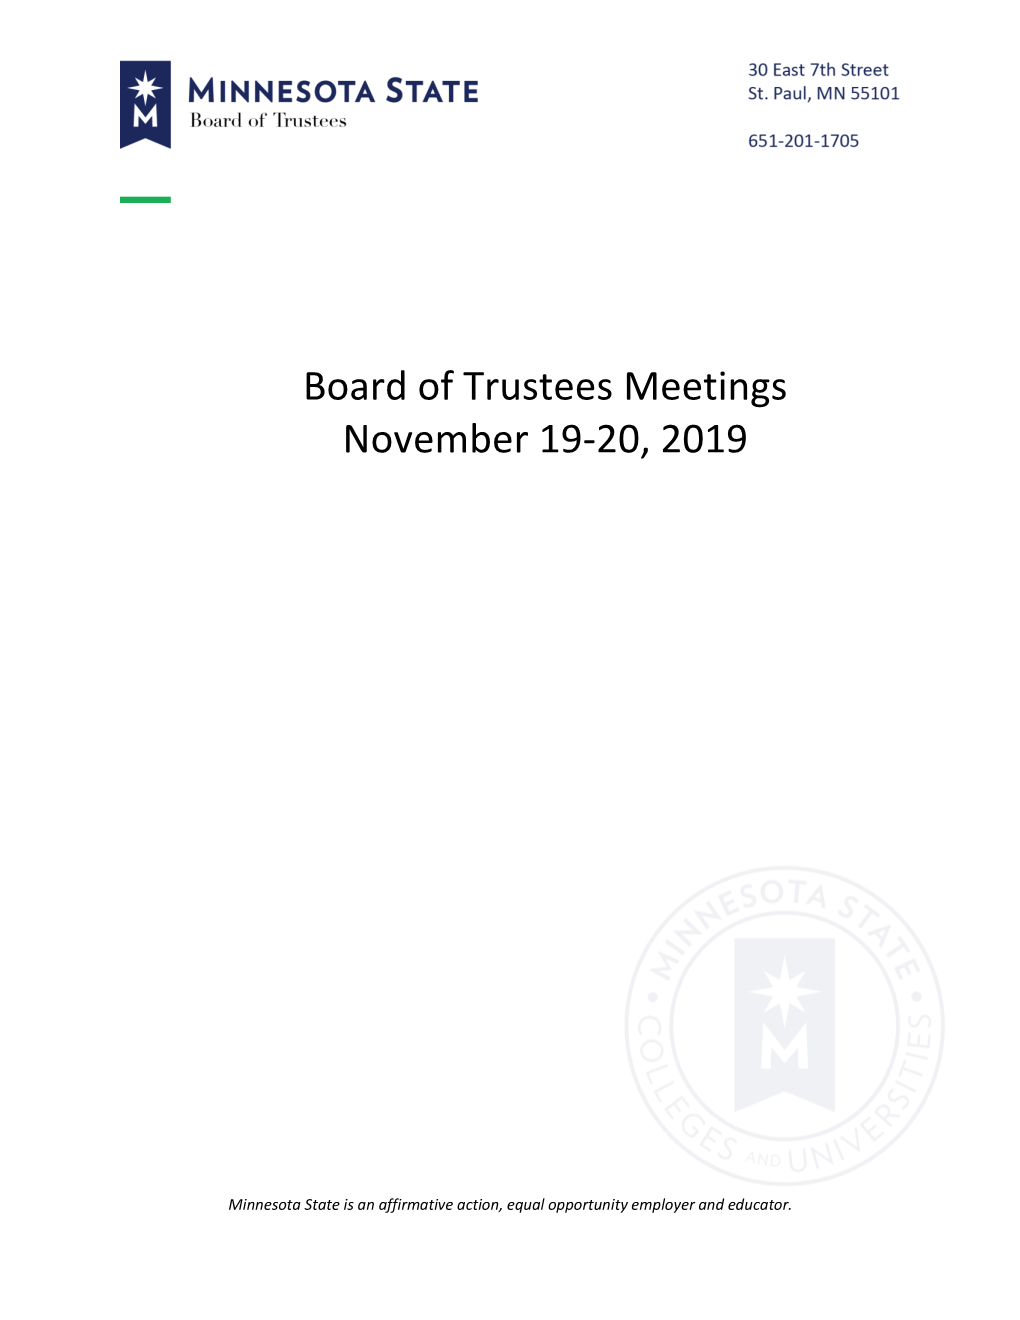 Board of Trustees Meetings November 19-20, 2019